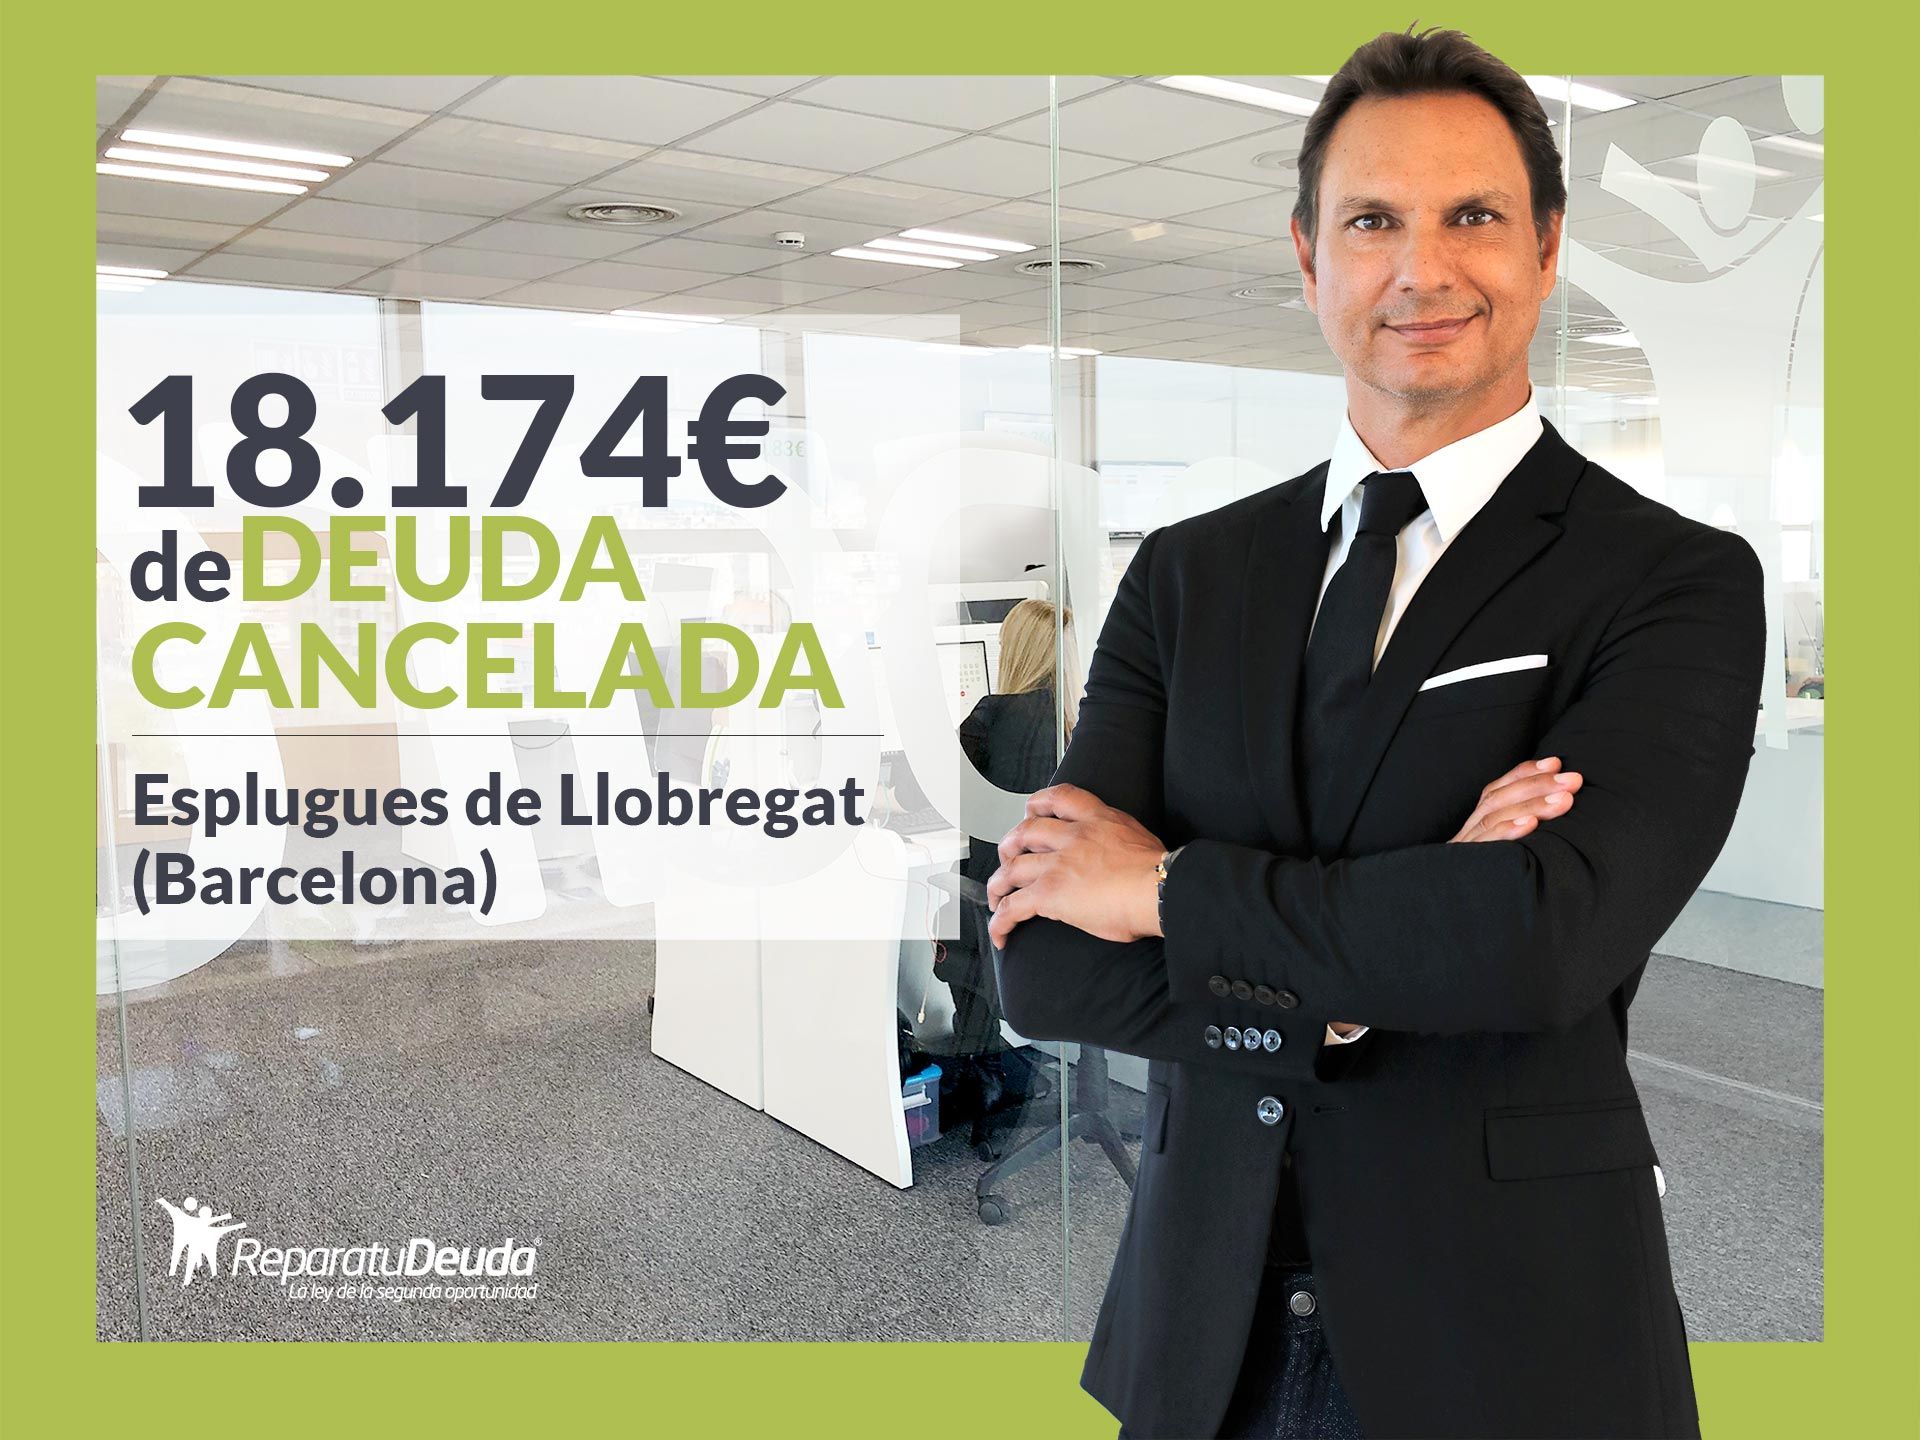 Repara tu Deuda cancela 18.174? en Esplugues de Llobregat (Barcelona) con la Ley de Segunda Oportunidad